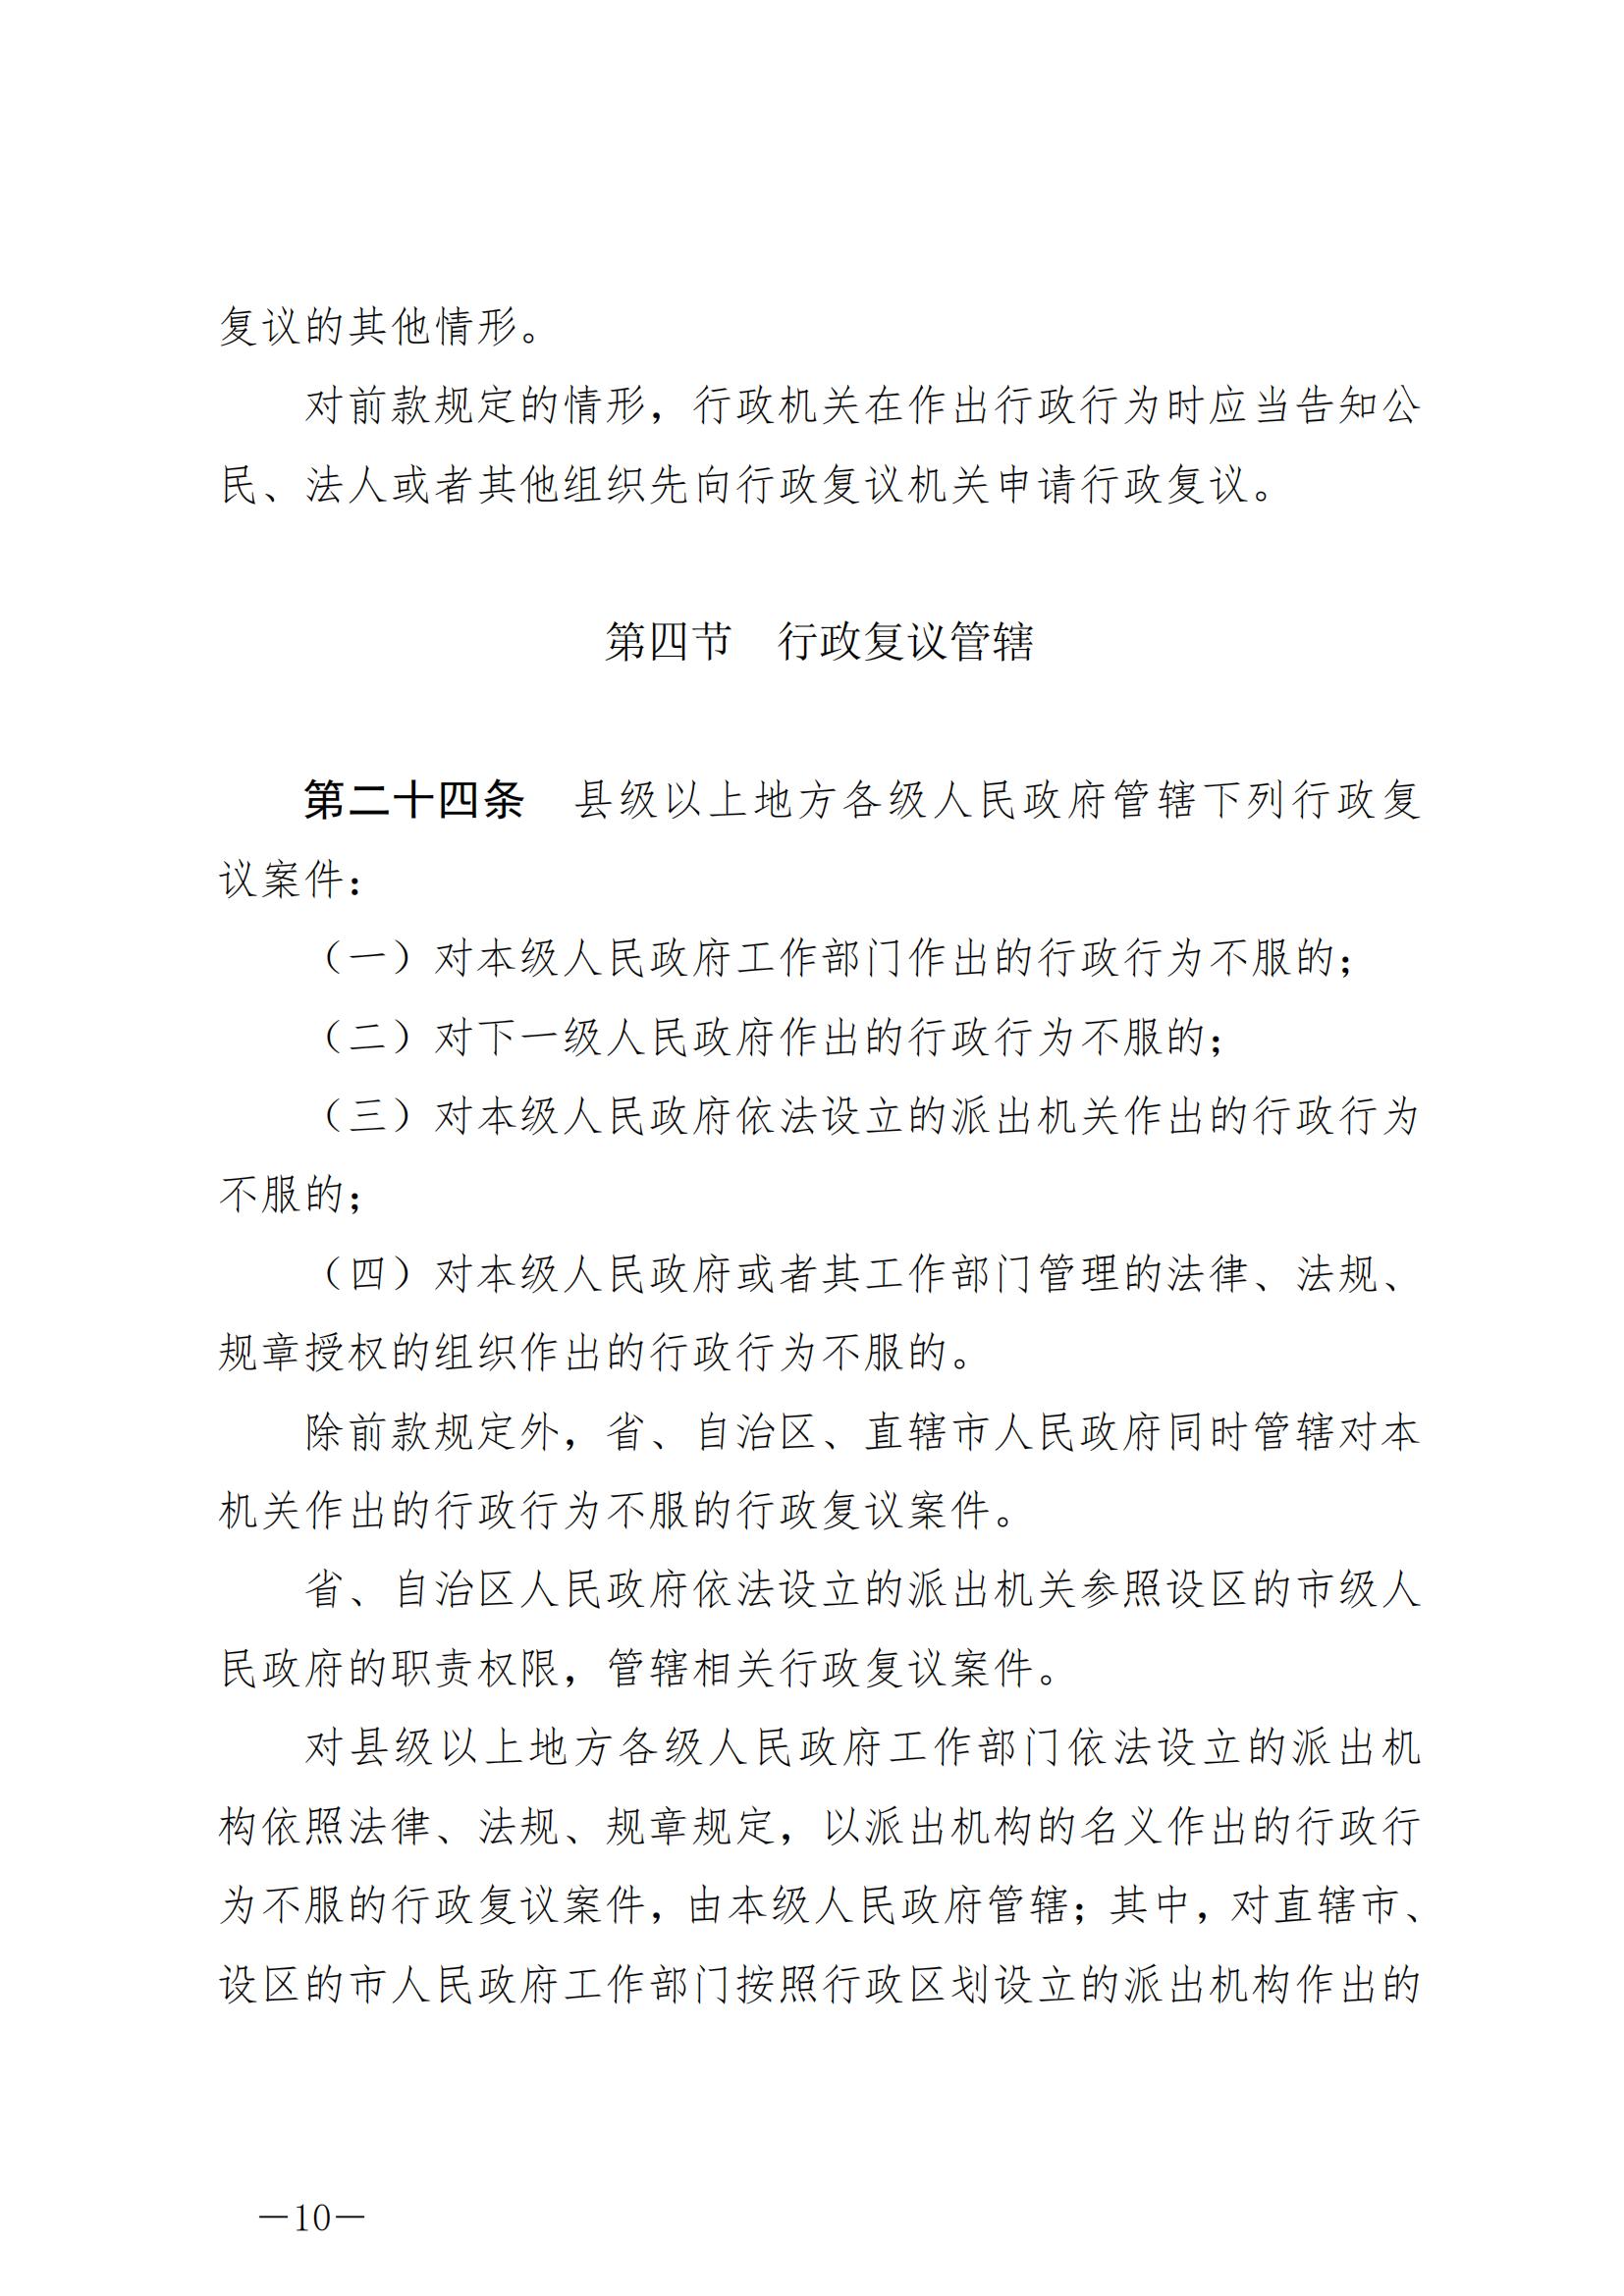 《中华人民共和国行政复议法》_20231204154310_09.jpg